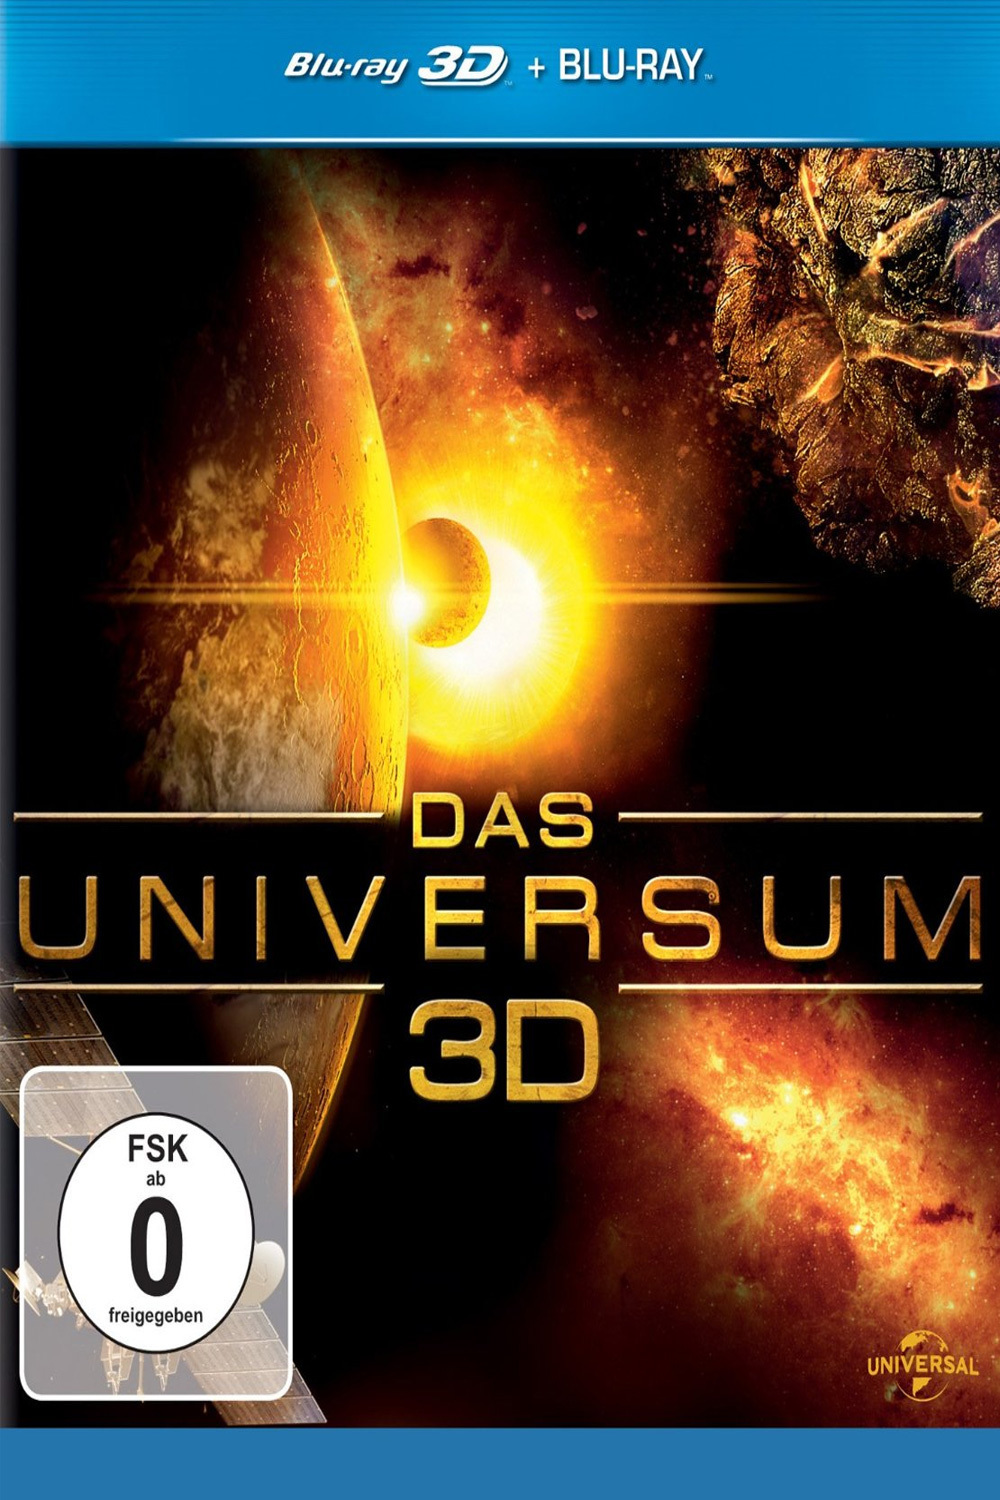 Plakat von "Das Universum 3D"